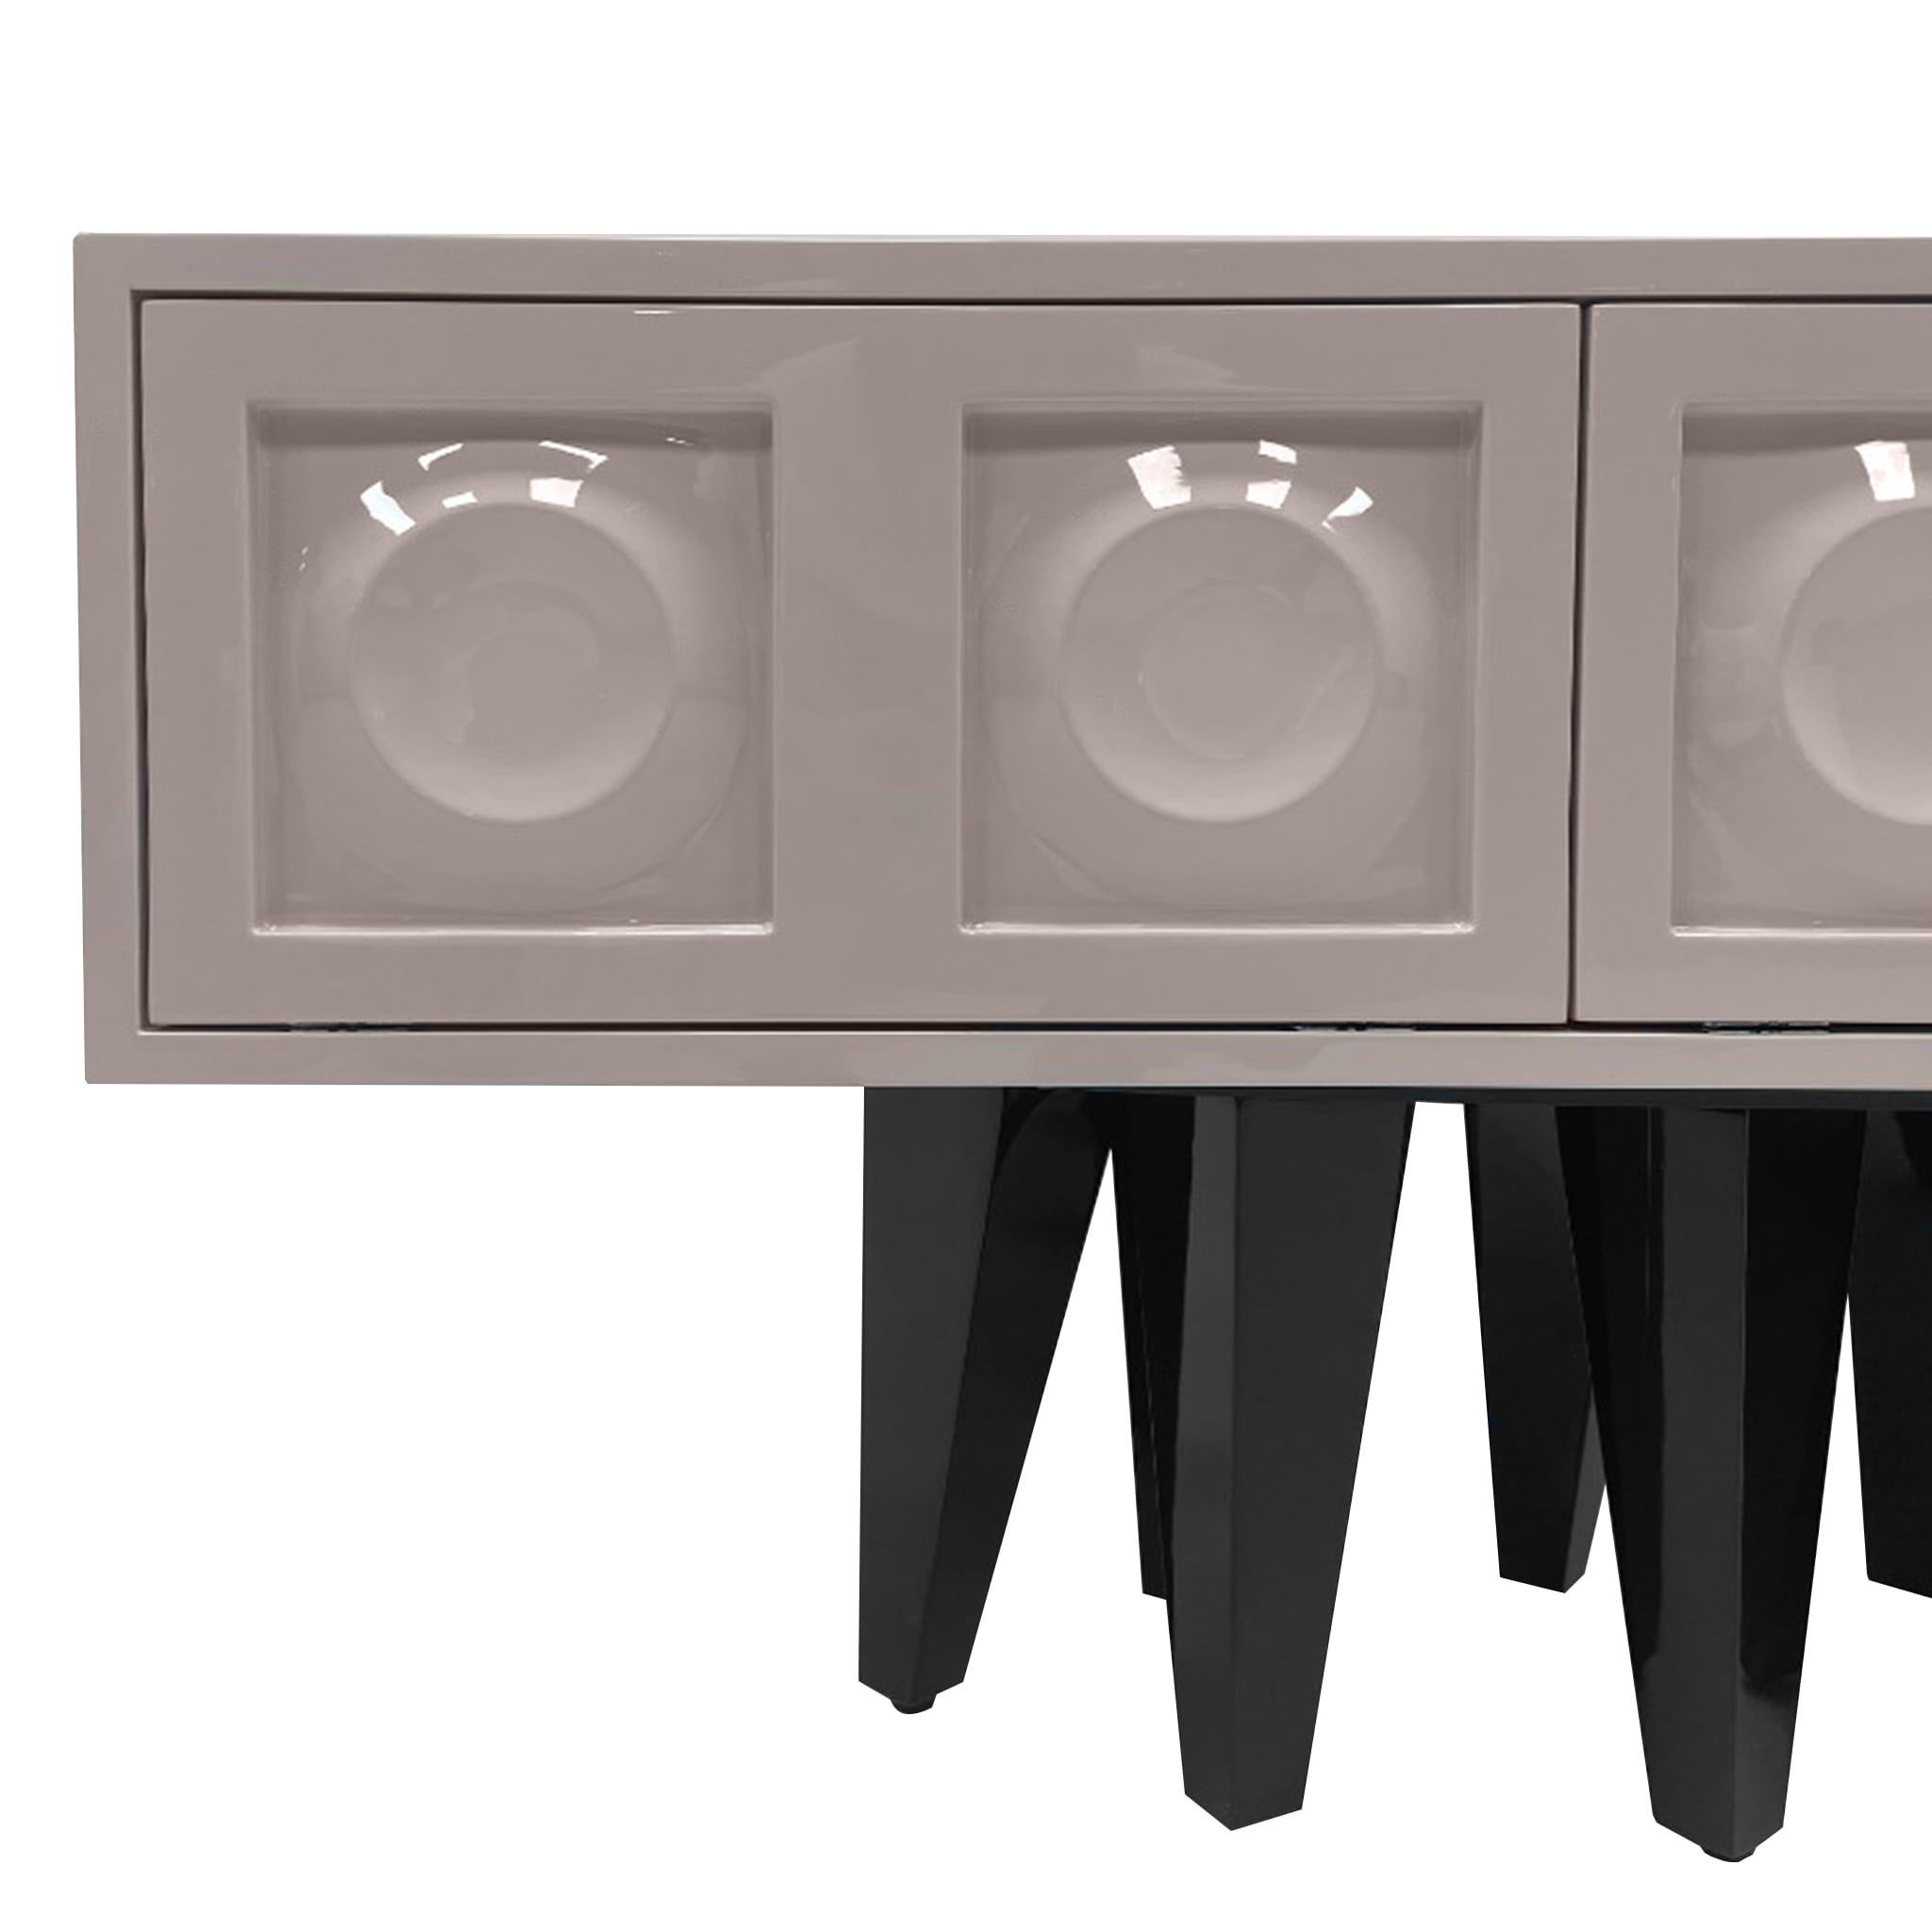 Le meuble TV Burton présente un style de design moderne exceptionnel qui associe des formes et des matériaux audacieux. Maintenant que vous l'avez vu, vous ne l'oublierez pas. L'esthétique visuelle de l'Icone est emblématique. Surréaliste comme un